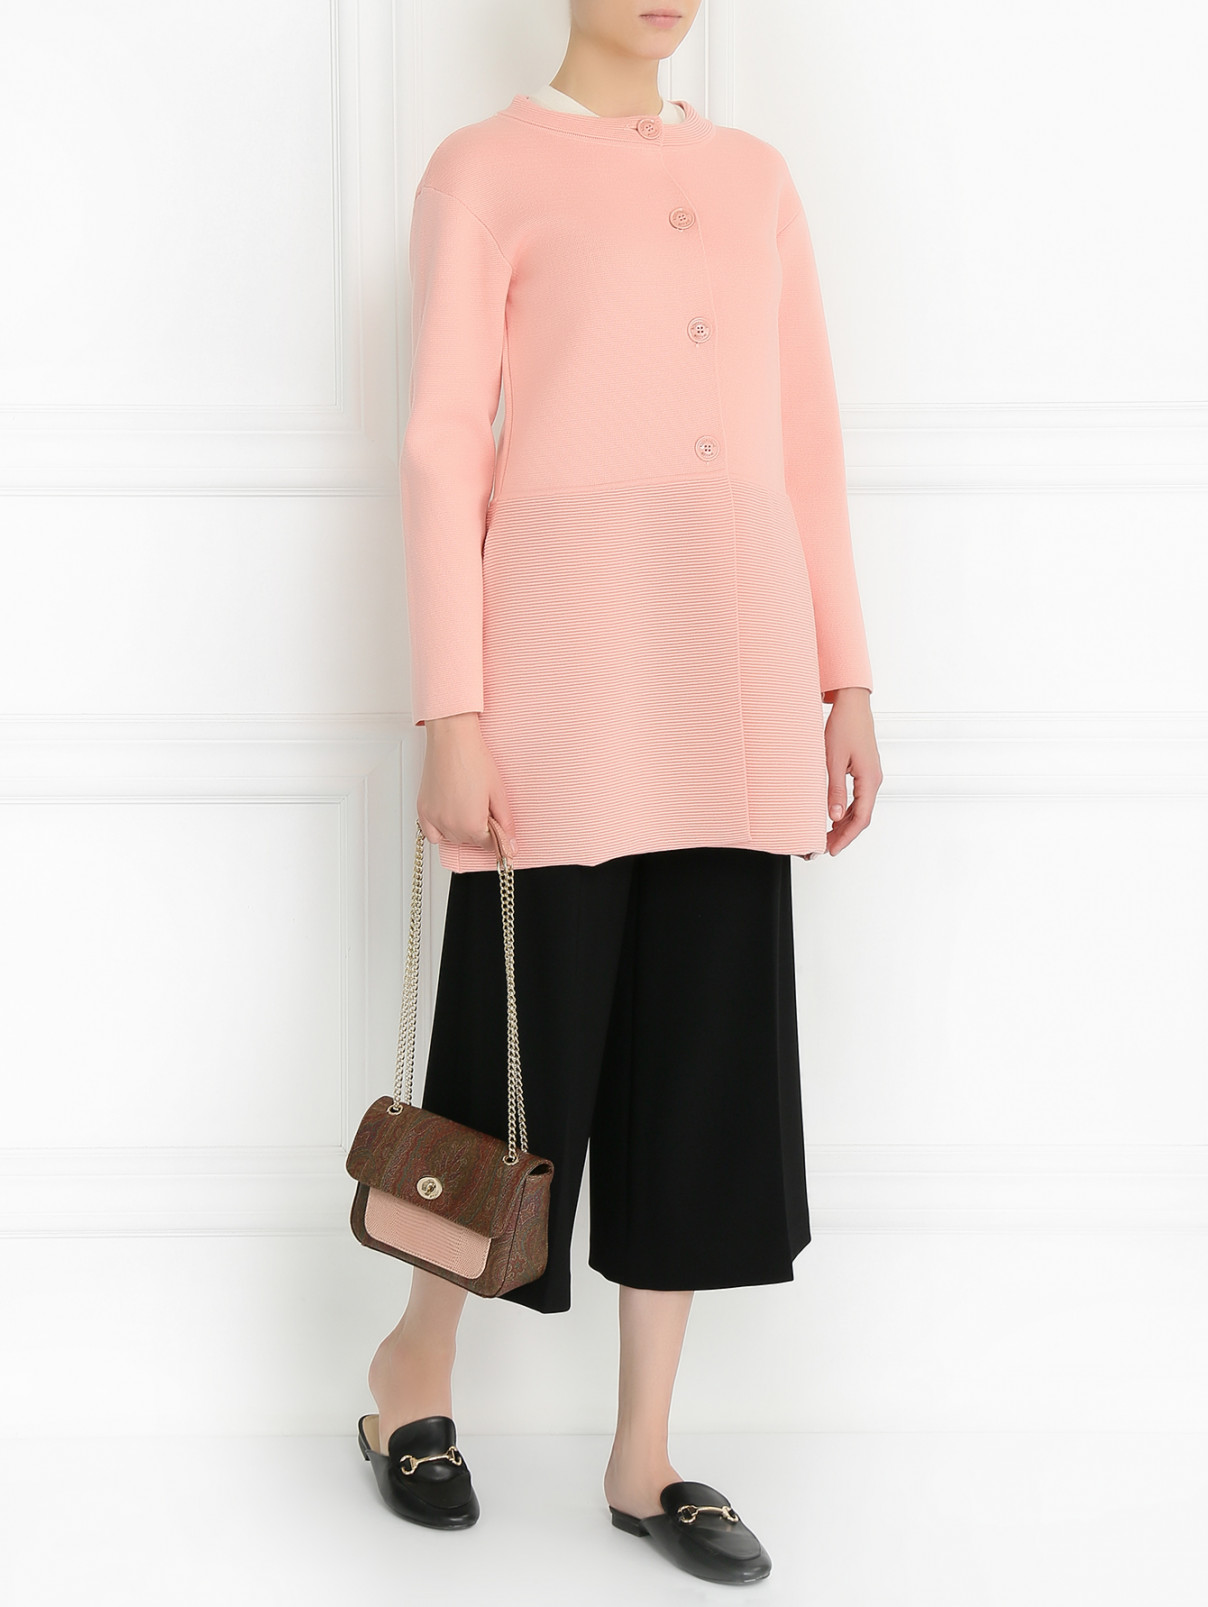 Пальто из шерсти и хлопка Moschino Boutique  –  Модель Общий вид  – Цвет:  Розовый